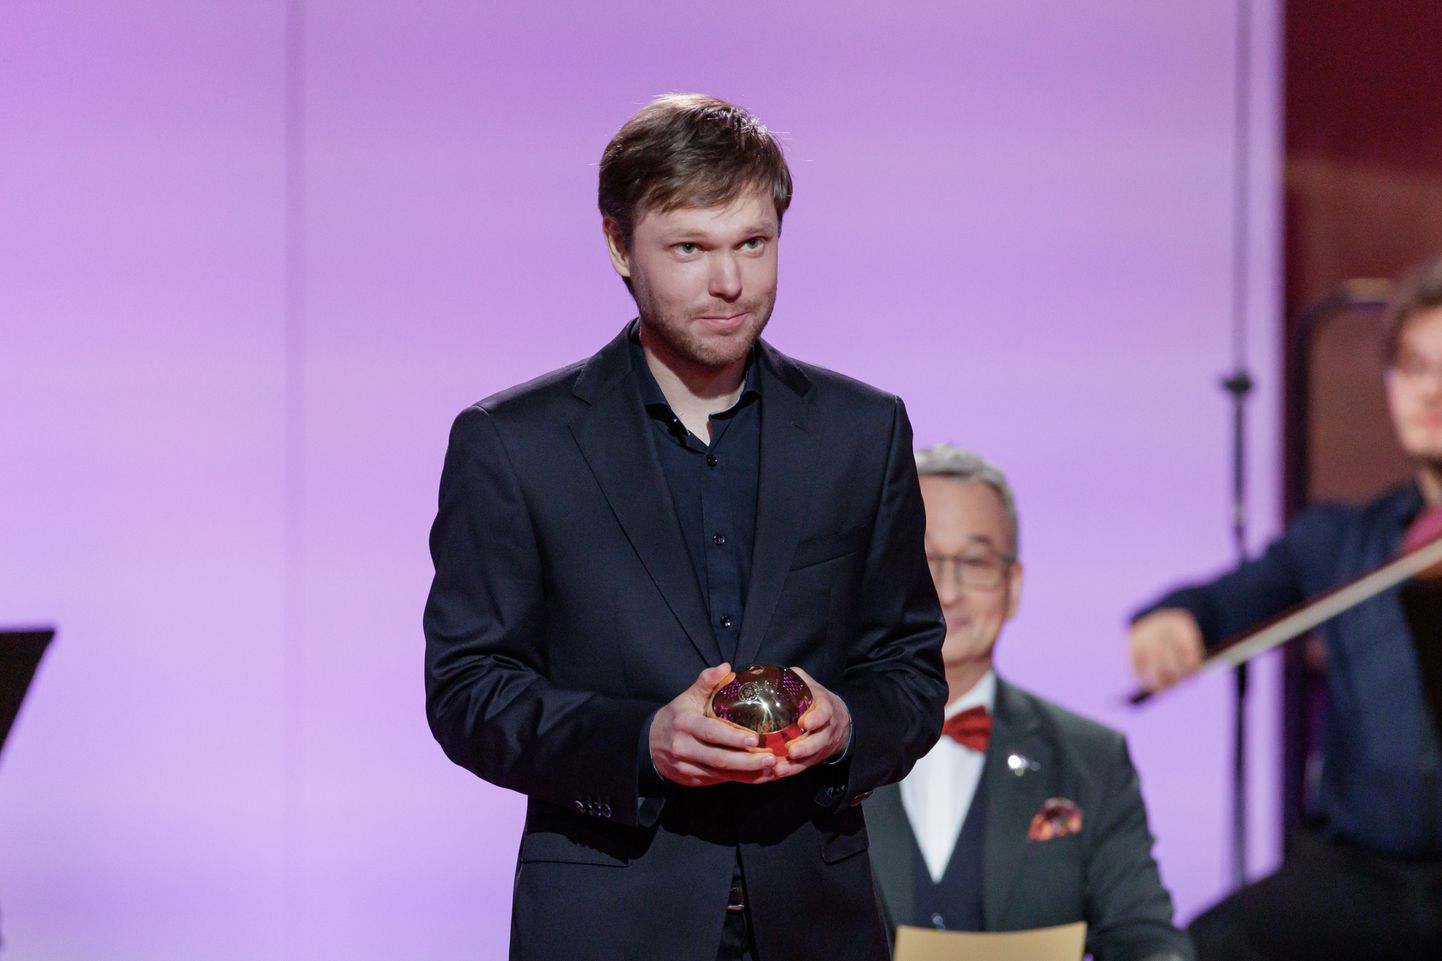 Aasta muusiku tiitli pälvib muusik, kelle loomingulised saavutused on edendanud Eesti muusikakultuuri. Selle aasta muusikuks valiti Pärt Uusberg.